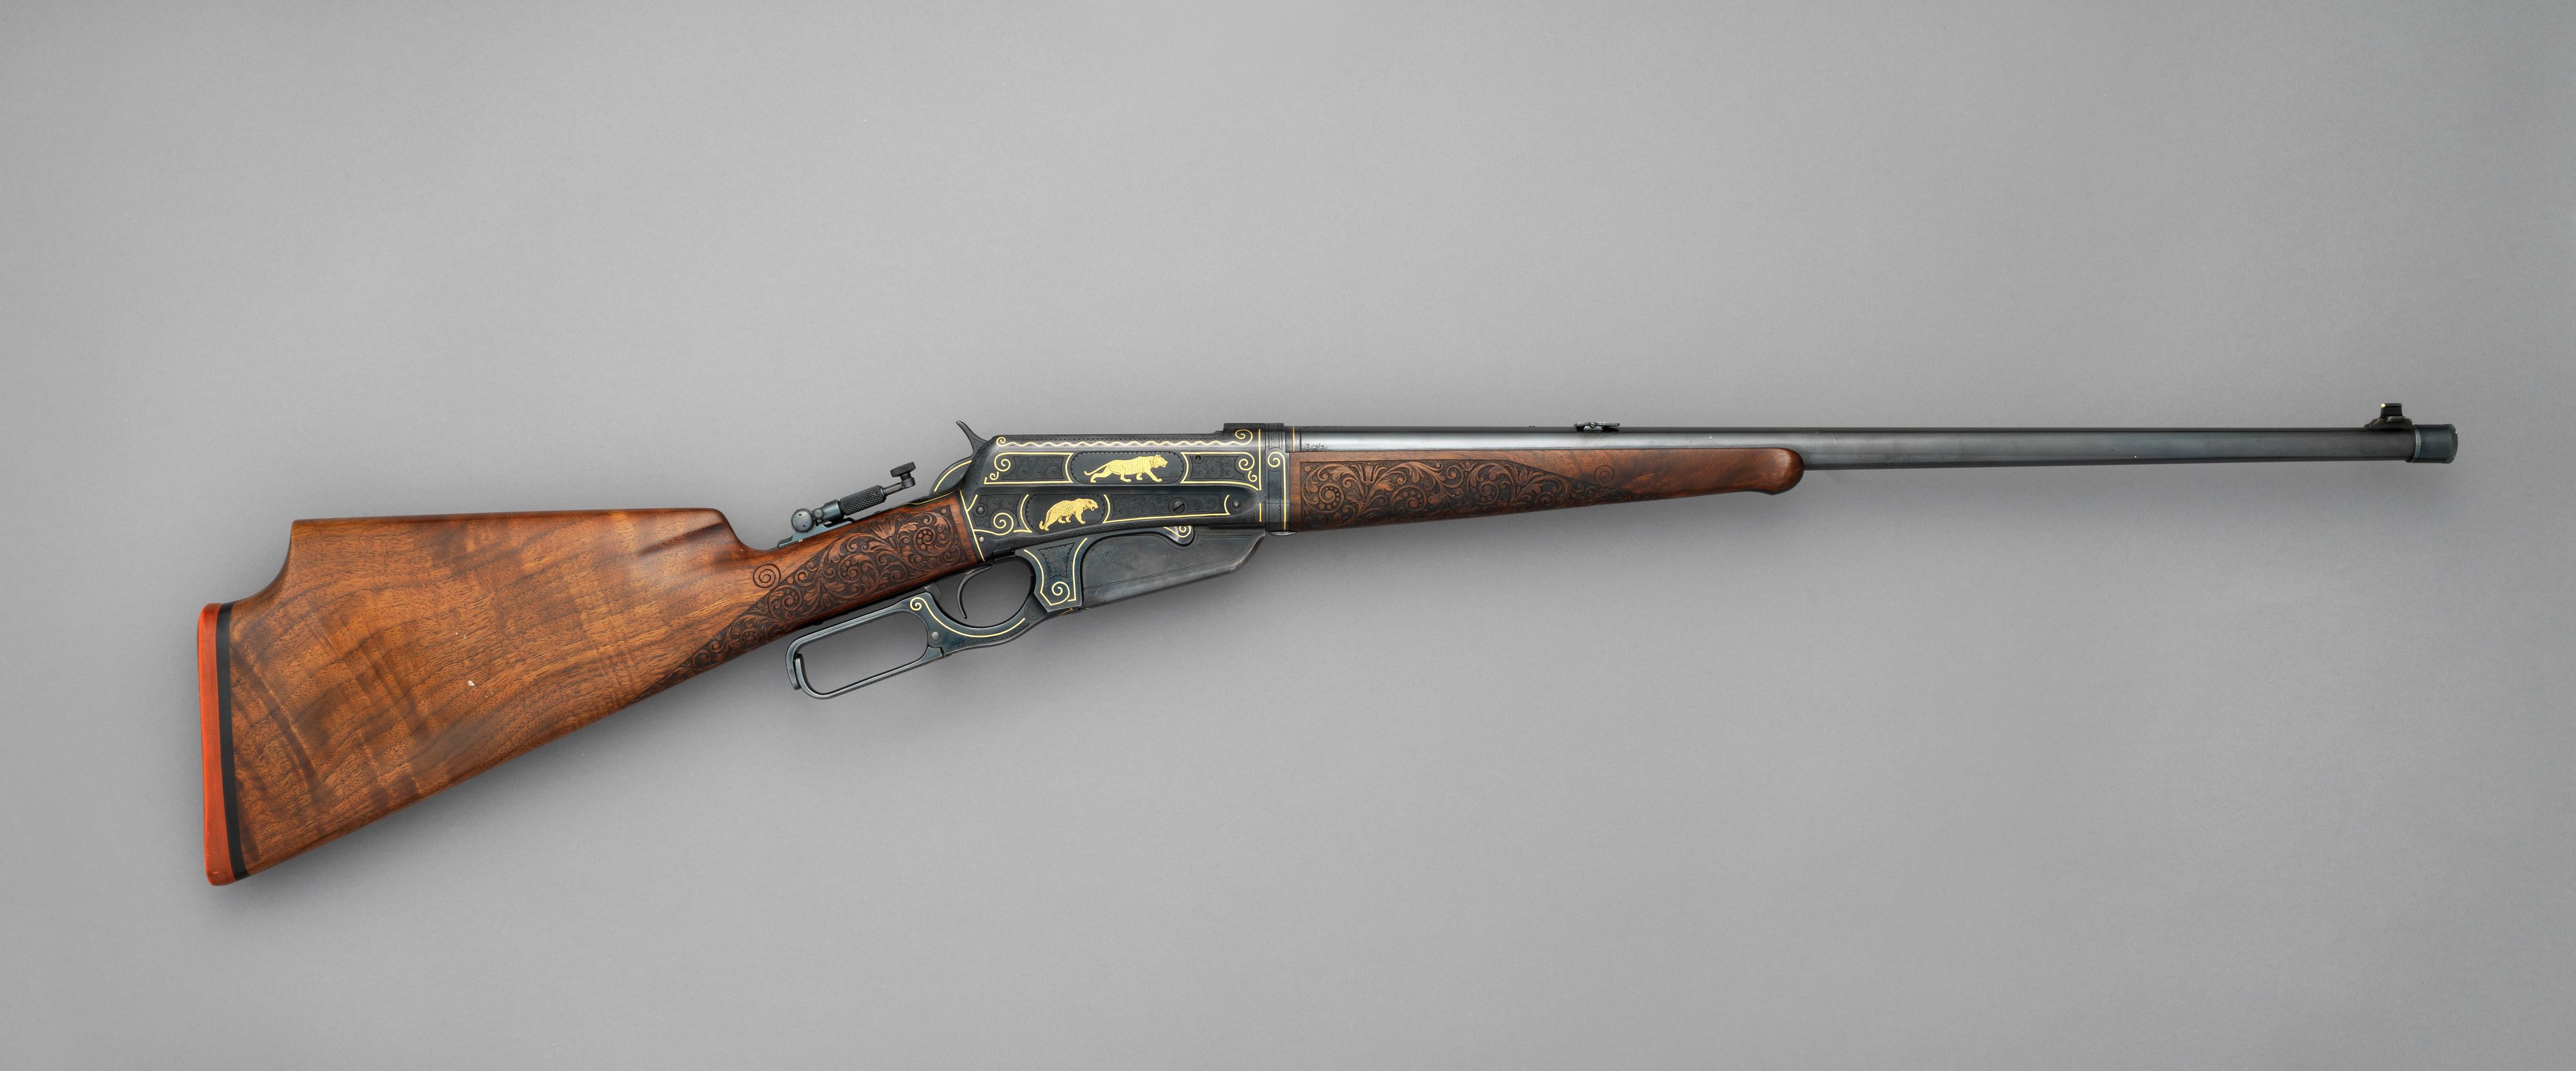 https://hips.hearstapps.com/hmg-prod/images/winchester-model-1895-takedown-rifle-serial-no-81851-custom-built-1913-right-side-1-1671459063.jpg